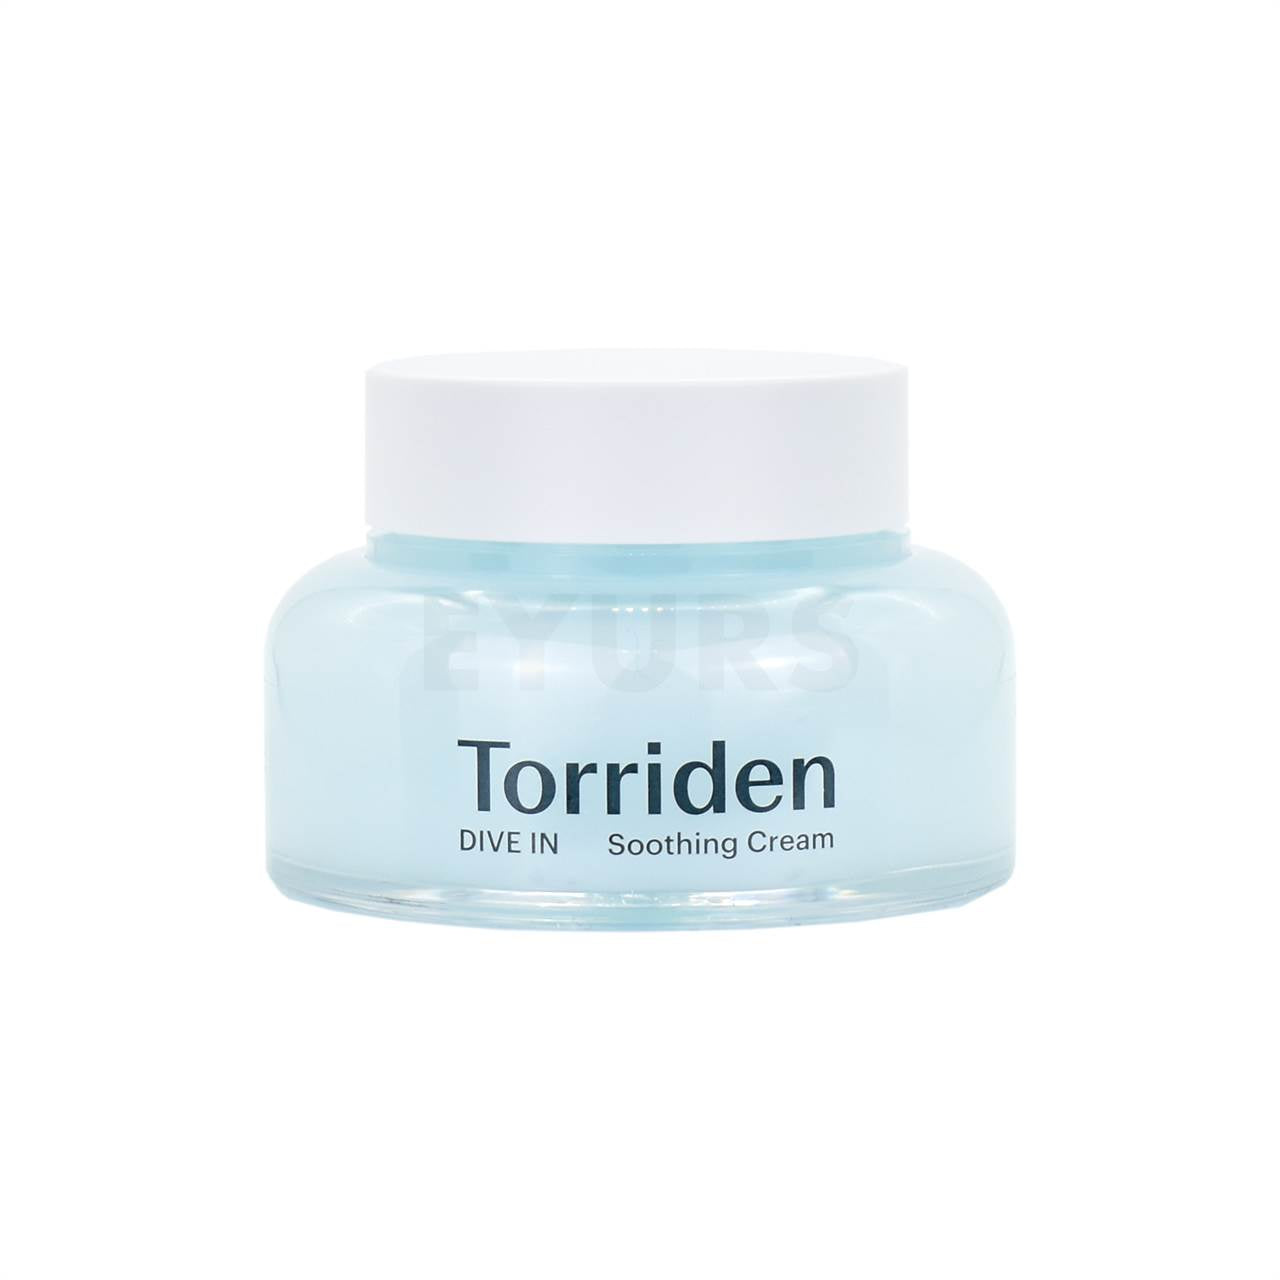 torriden dive in low molecular hyaluronic acid soothing cream